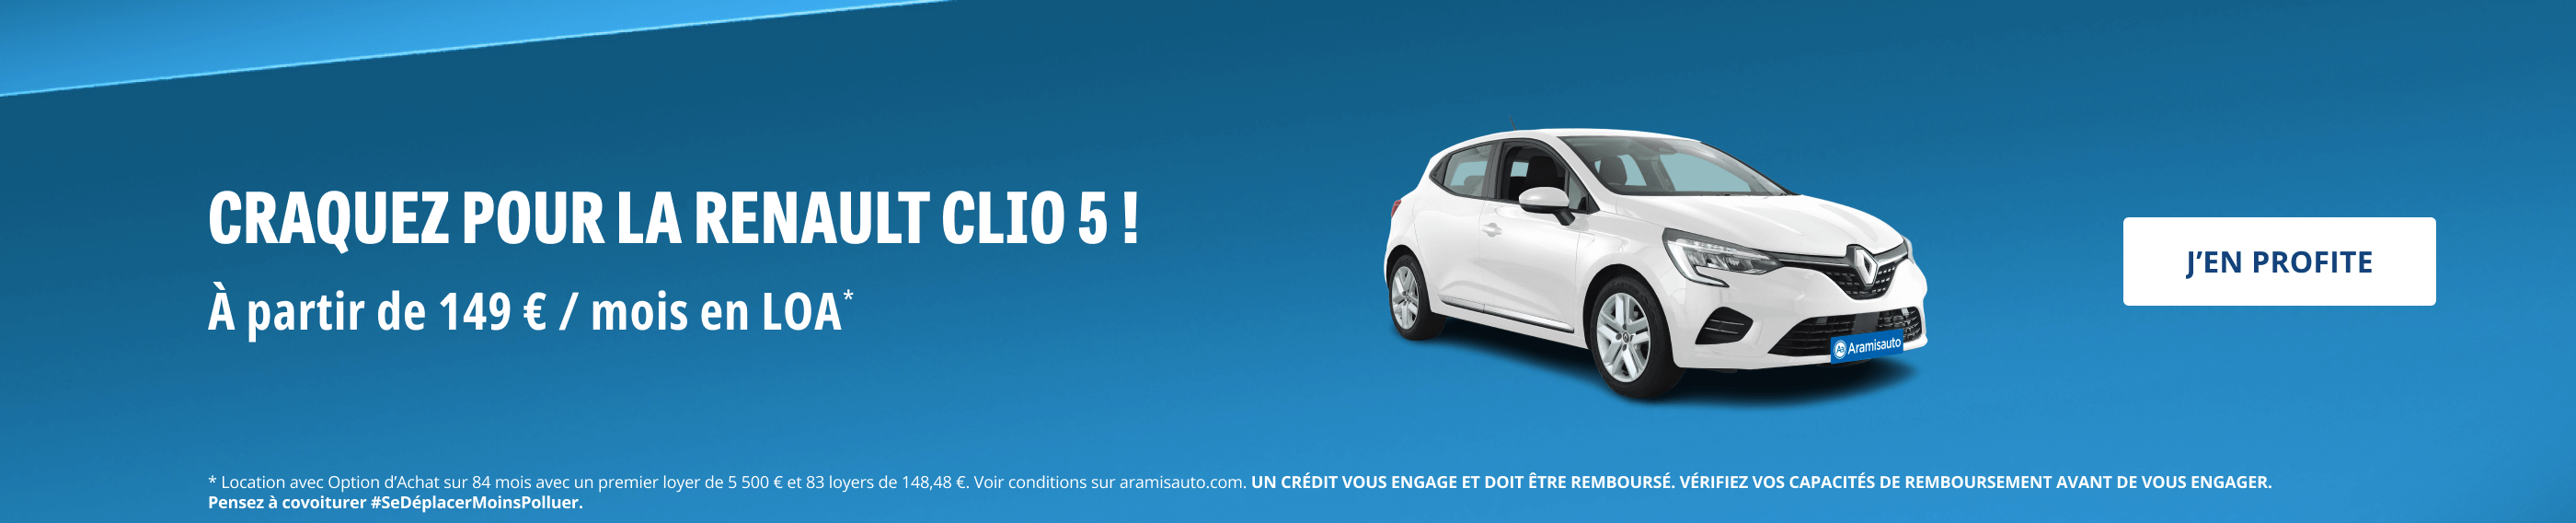 Craque pour la Renault Clio 5 ! À partir de 149 € / mois en LOA*. J'en profite 